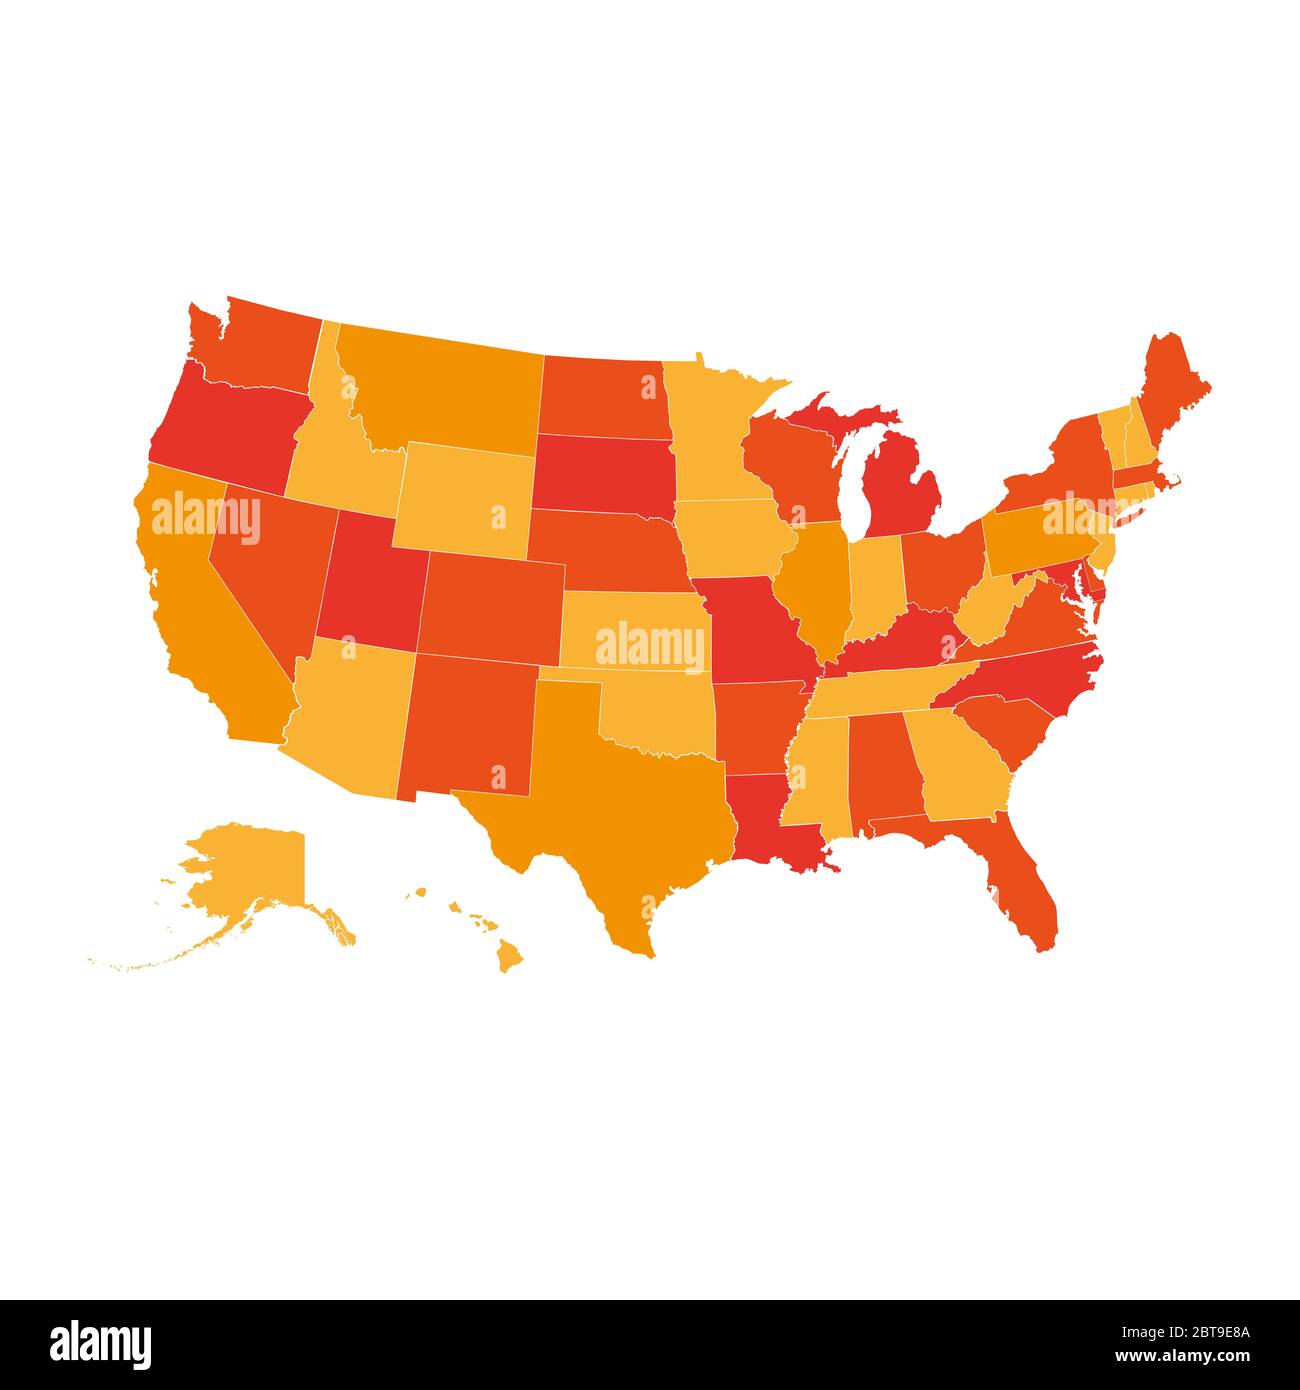 Mappa degli Stati Uniti, mappa degli Stati Uniti nella tavolozza dei colori arancione, tutti gli stati sono separati. Foto Stock